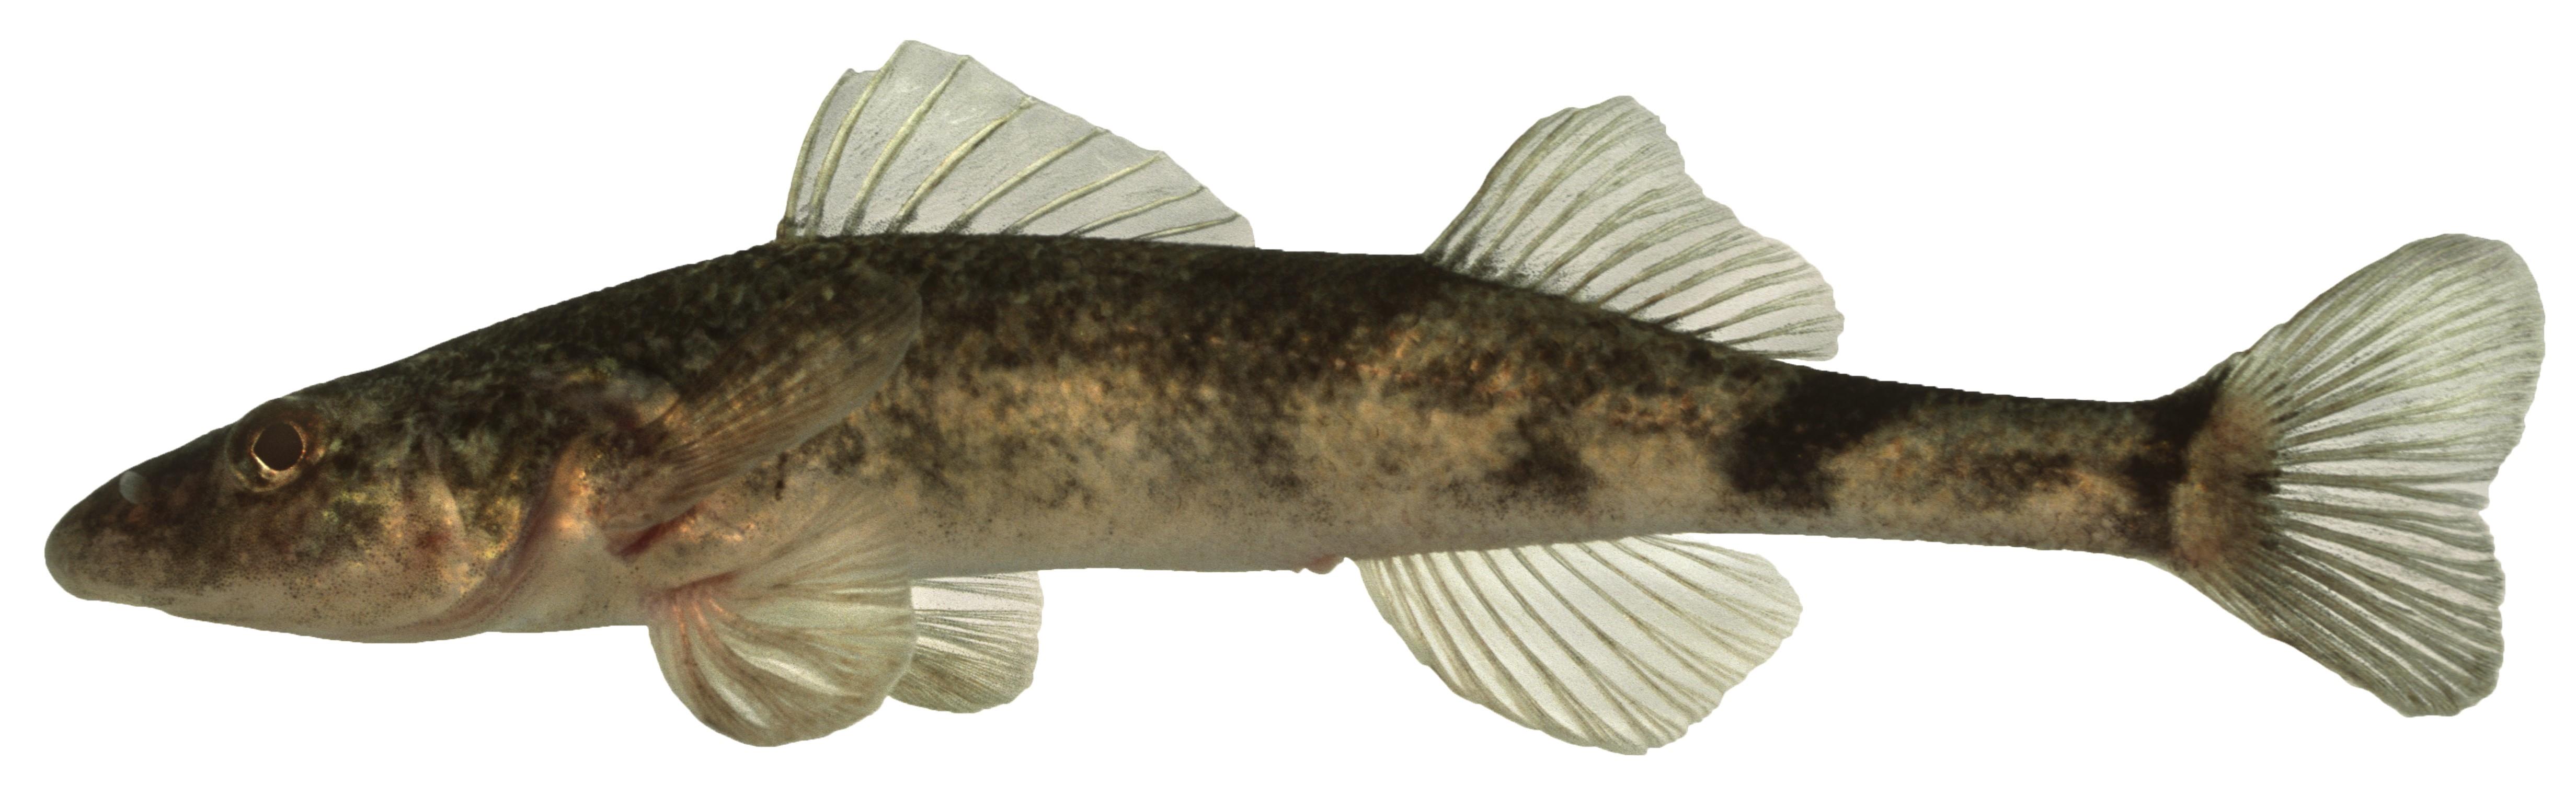 Щиповка обыкновенная фото и описание – каталог рыб, смотреть онлайн